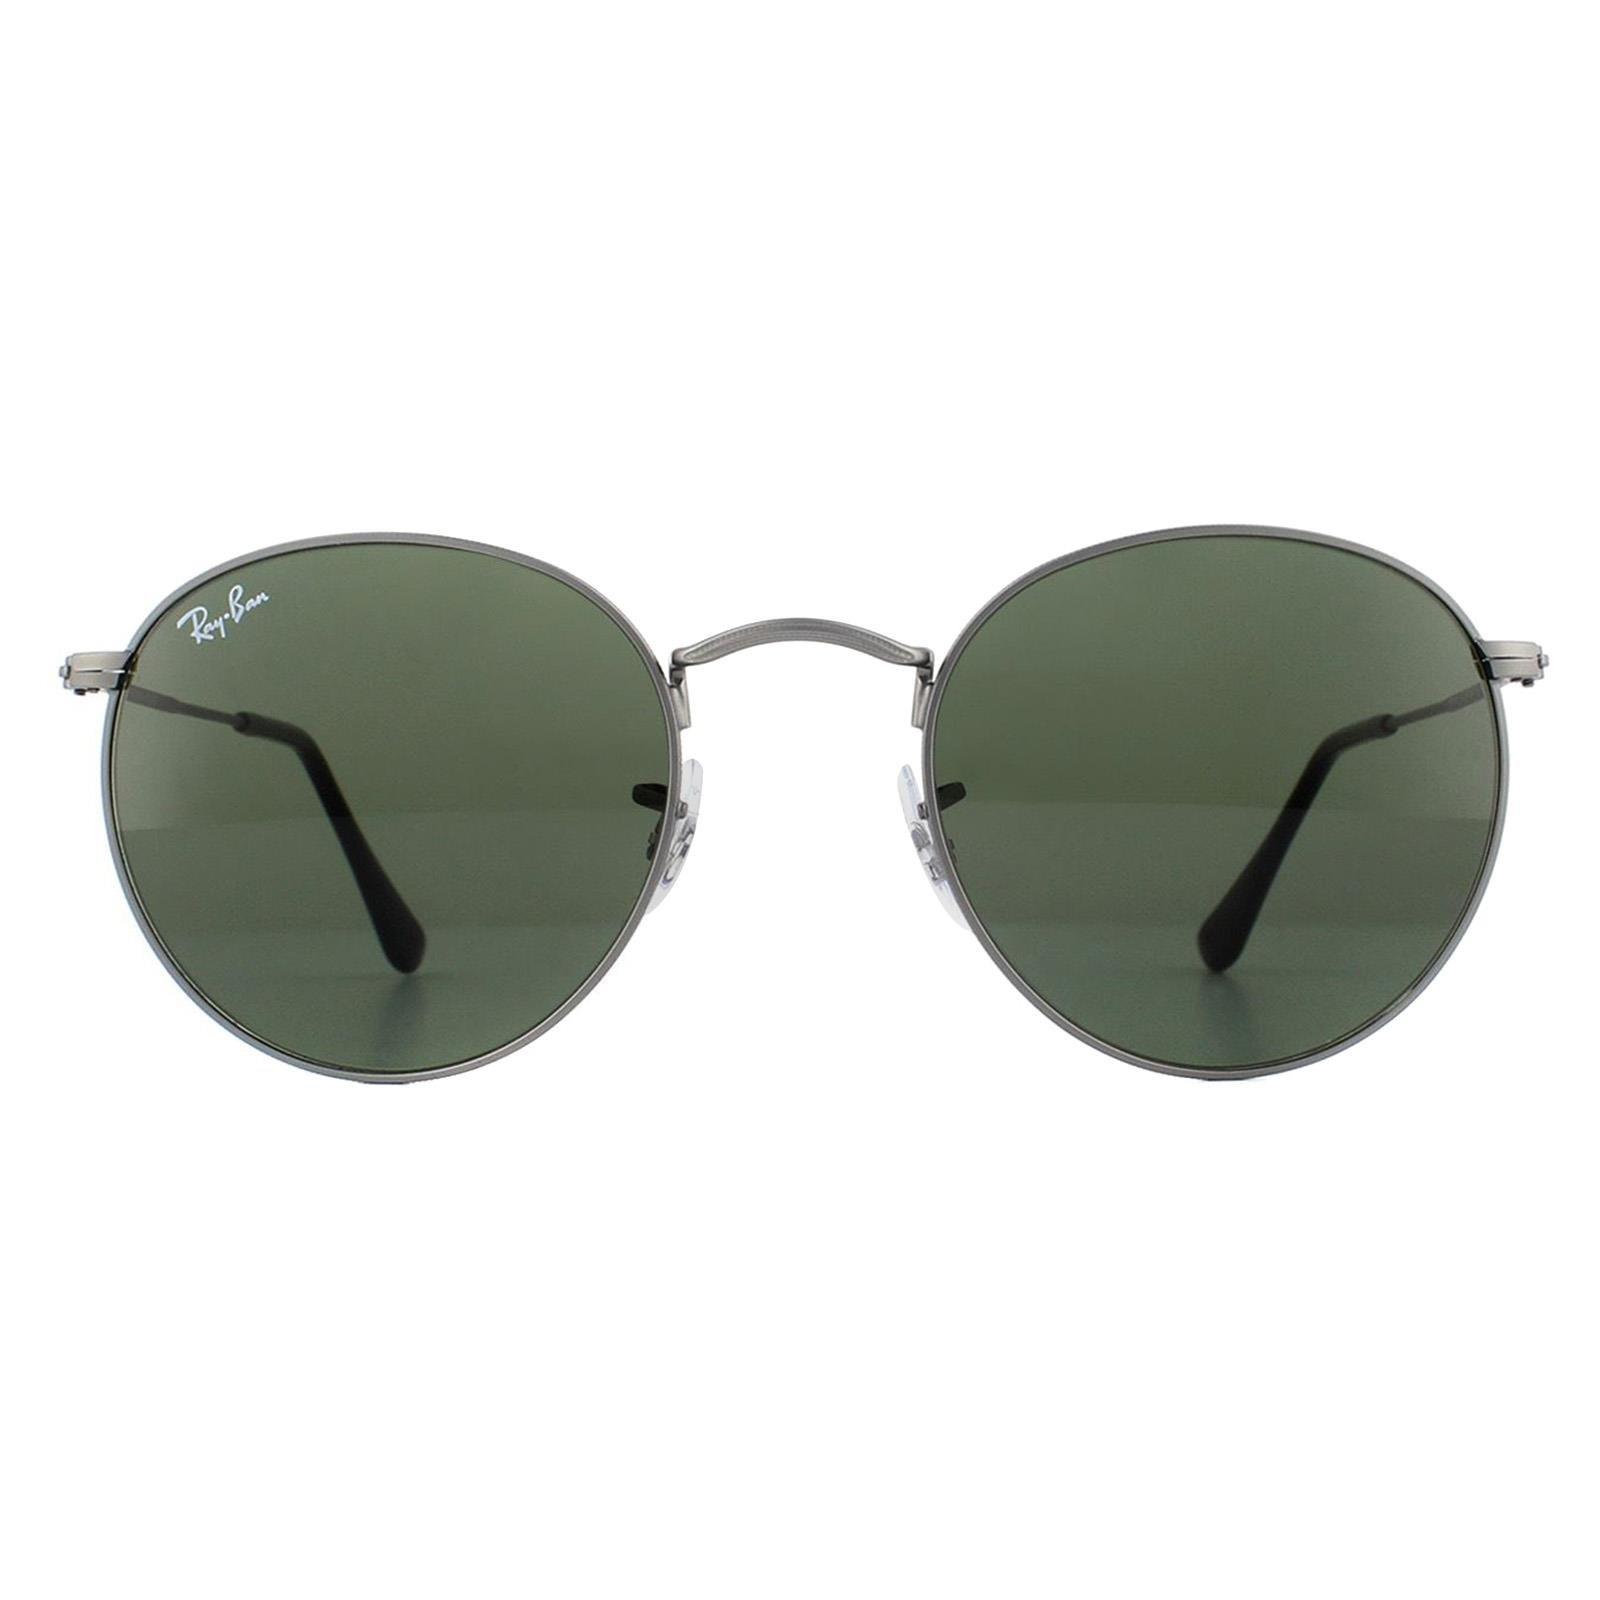 Круглые матовые зеленые солнцезащитные очки цвета бронзы Ray-Ban, серый быть джоном ленноном